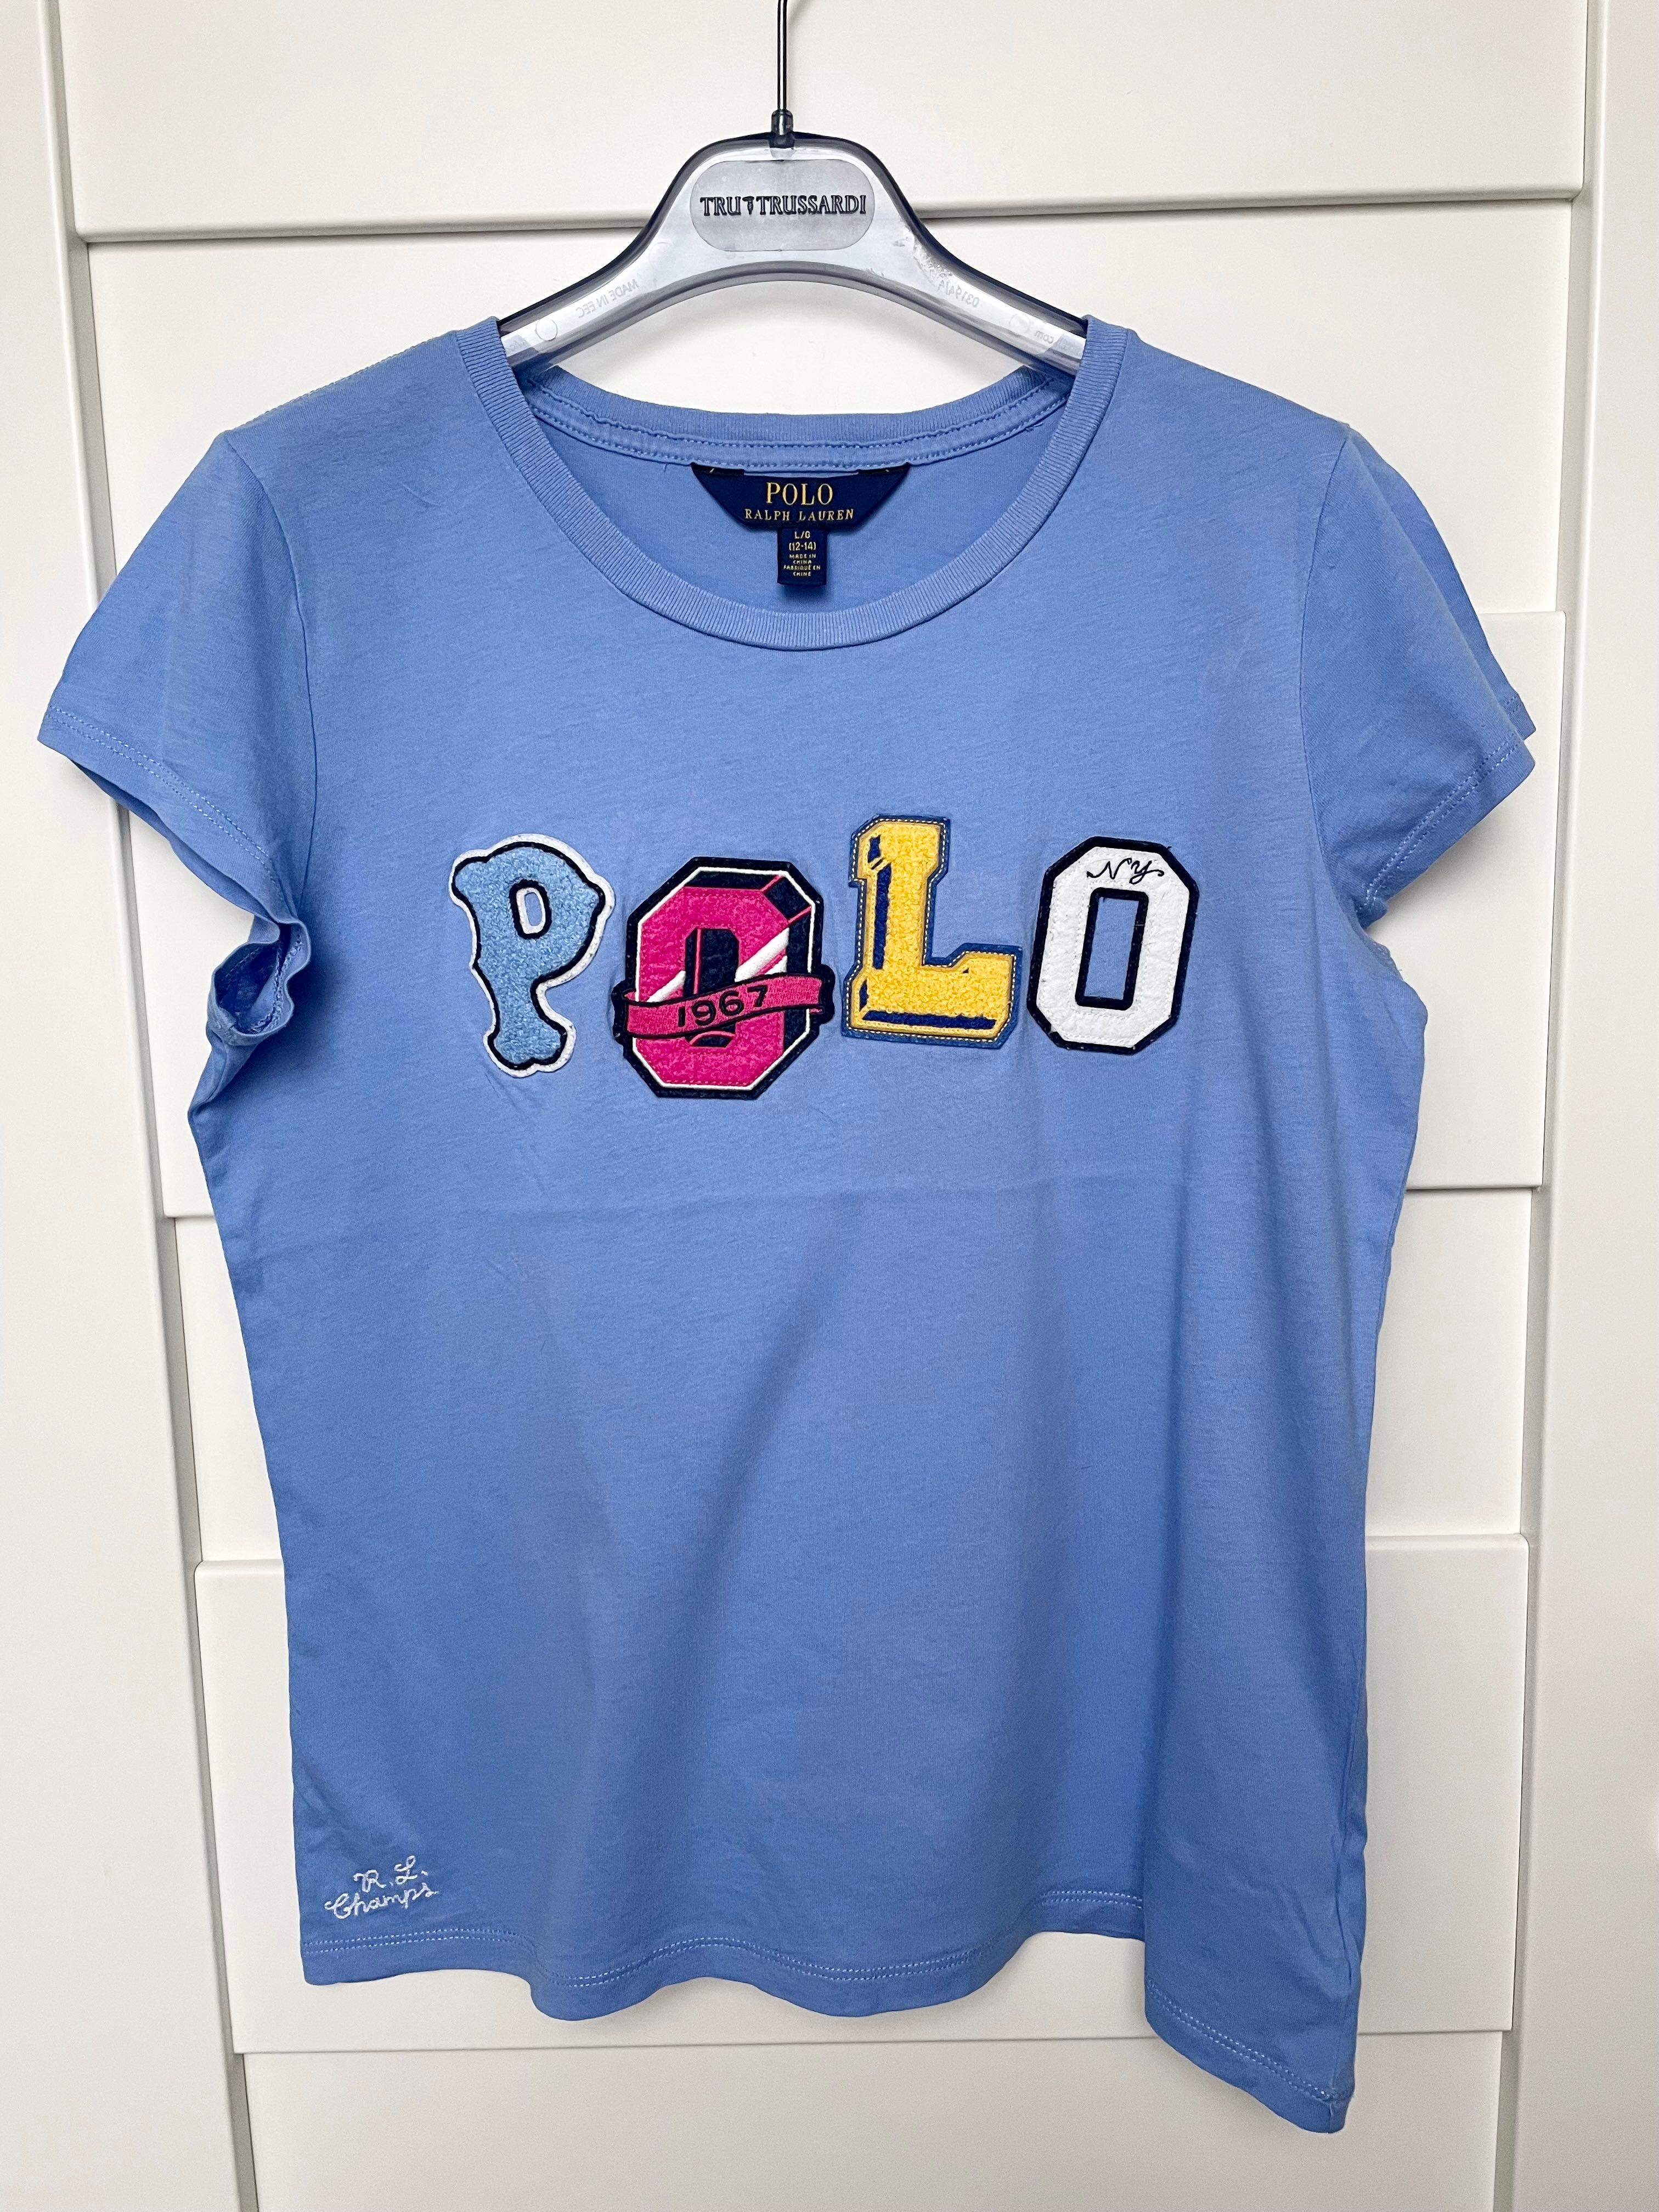 Ralph Lauren niebieski dziewczęcy t-shirt rozmiar L (12-14) lat